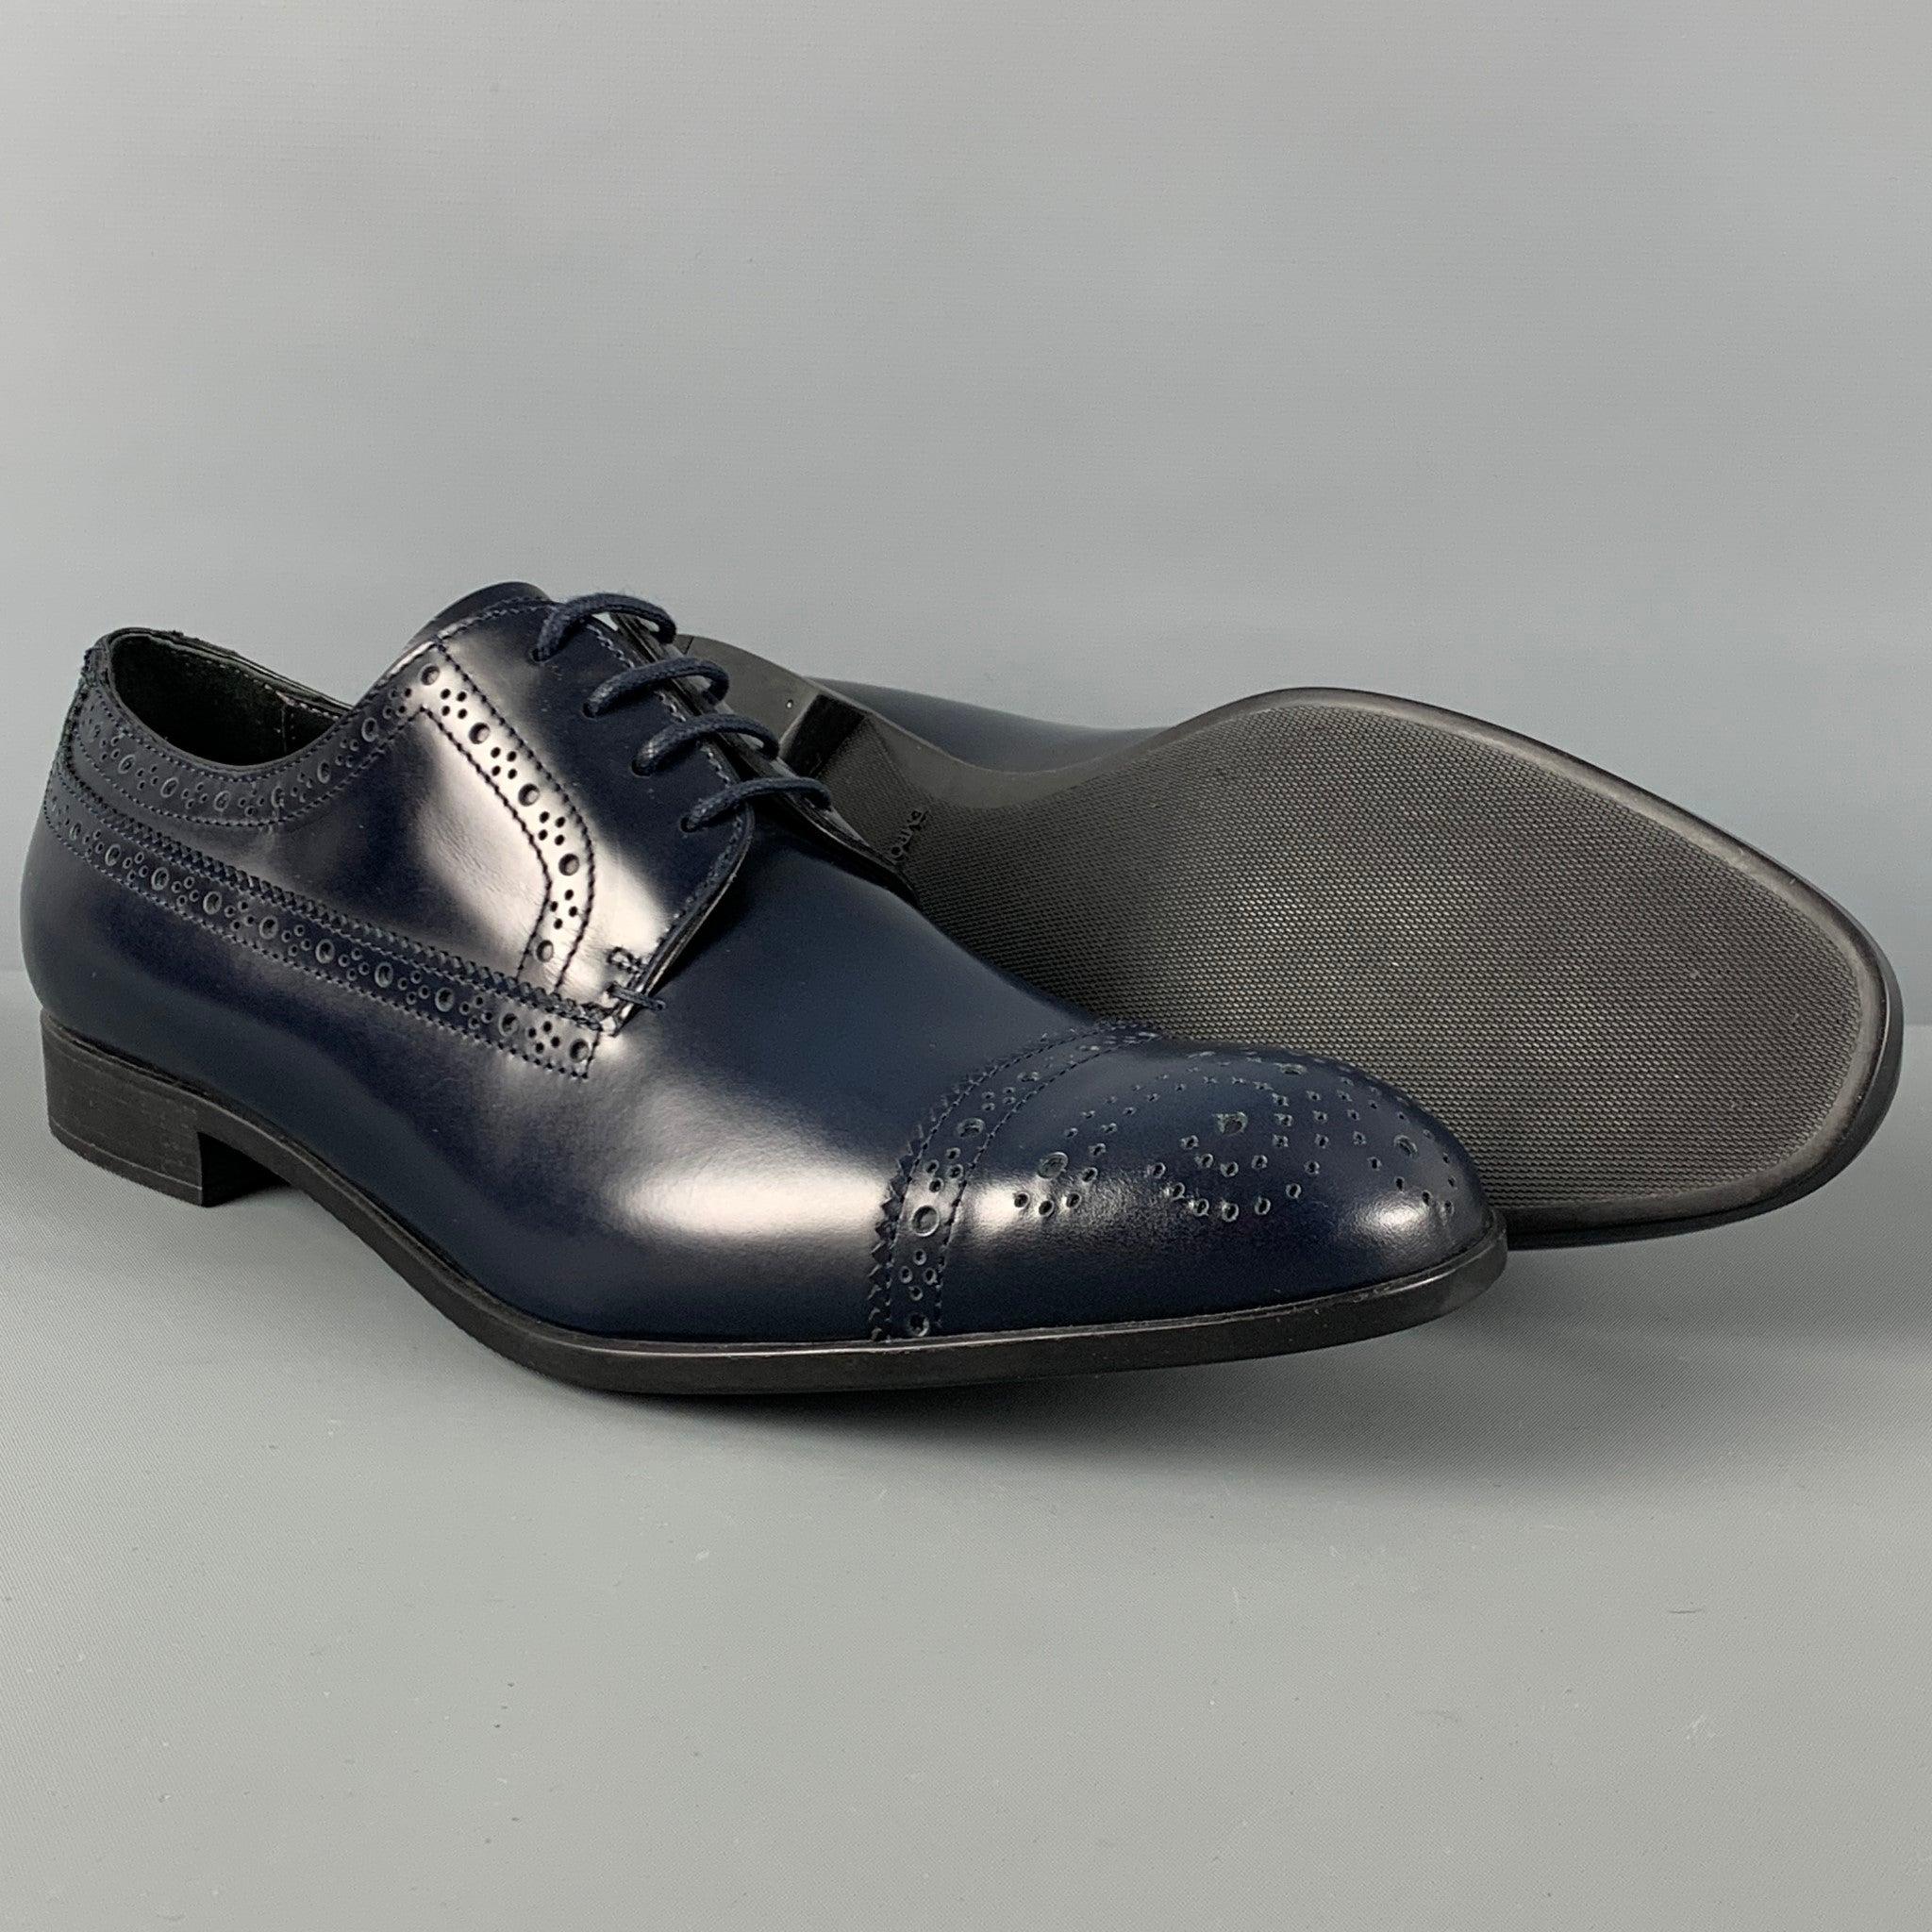 EMPORIO ARMANI - Chaussures à lacets en cuir perforé bleu marine, taille 9 Bon état à San Francisco, CA